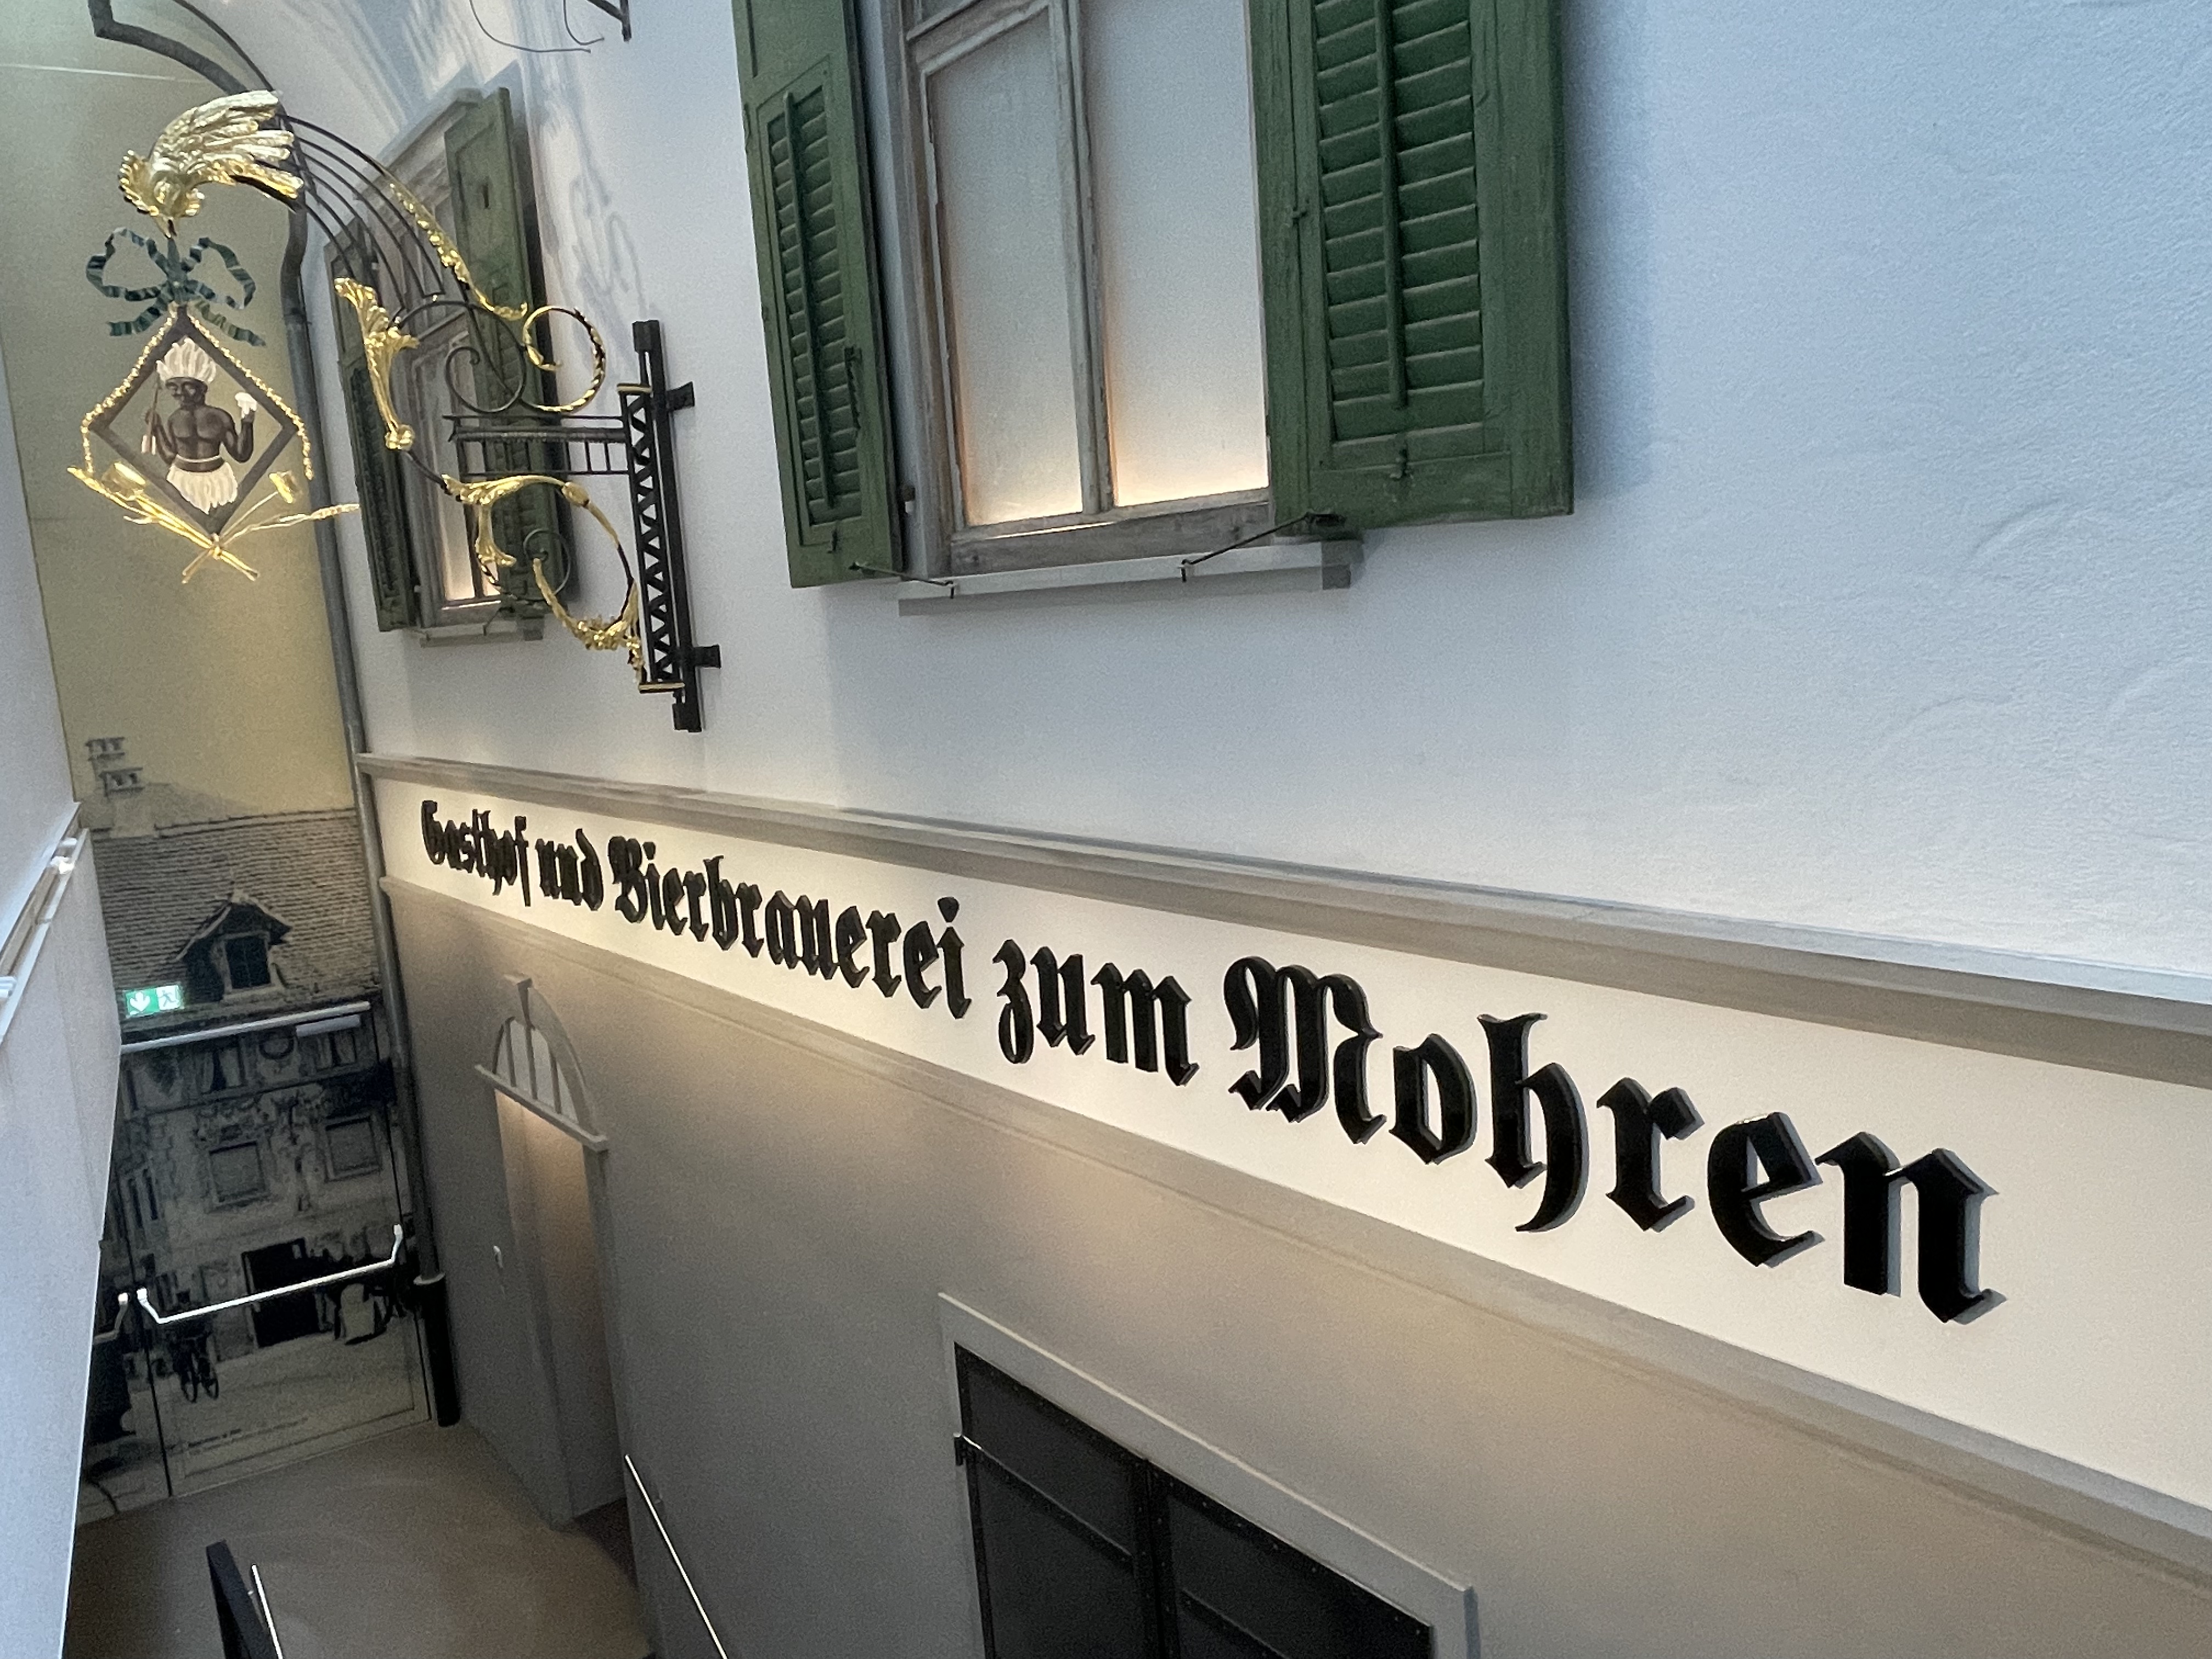 Auf dem Bild sieht man das alte Wappen an der Wandhängen und den Schriftzug"Gasthof und Bierbrauerei zum Mohren"